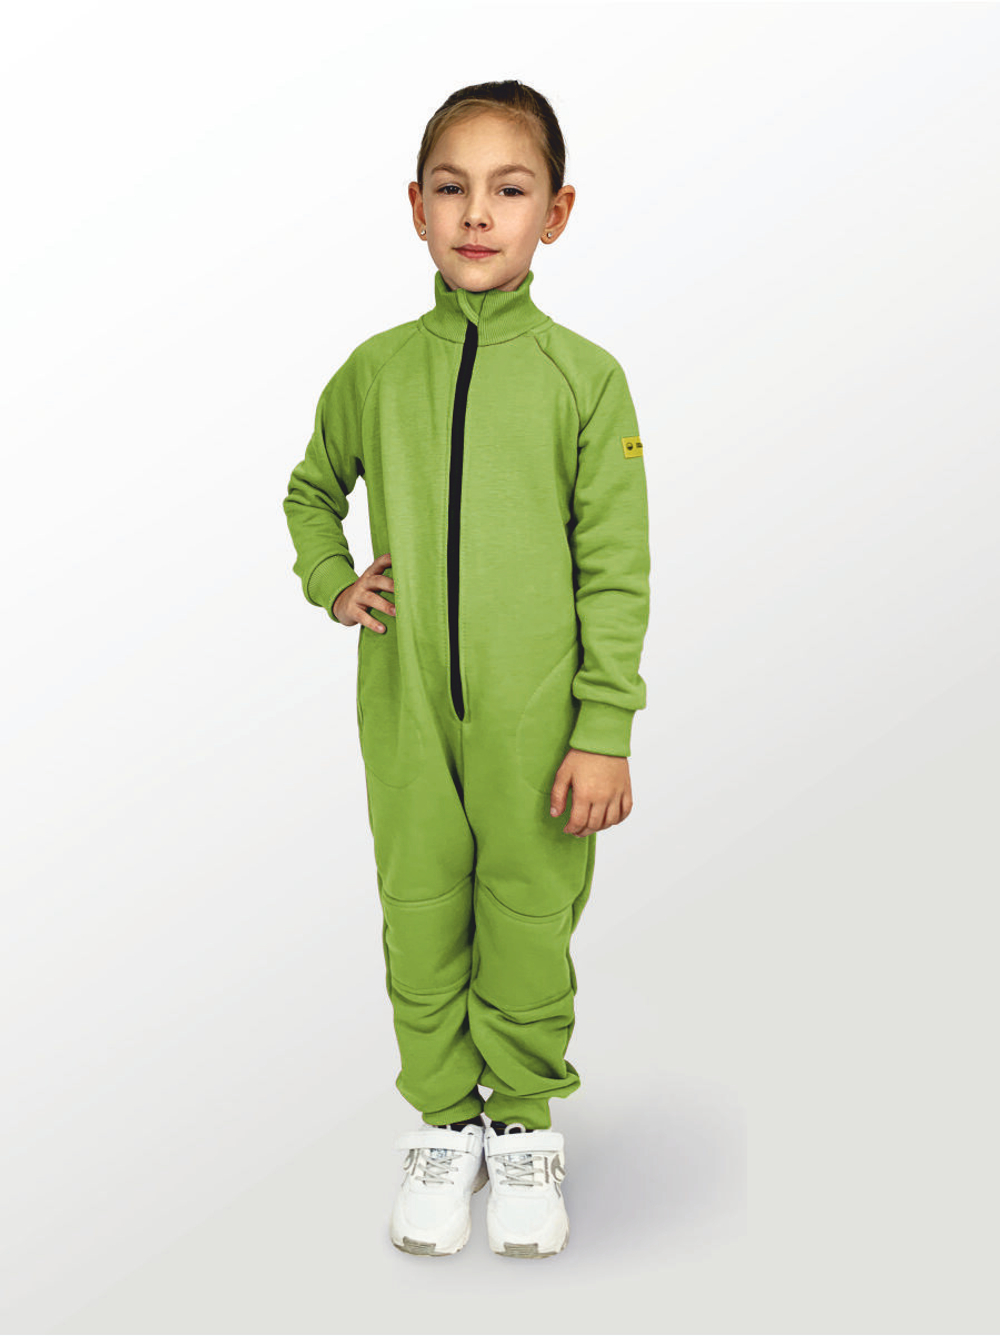 Комбинезон для детей, модель №1, рост 104 см, зеленый